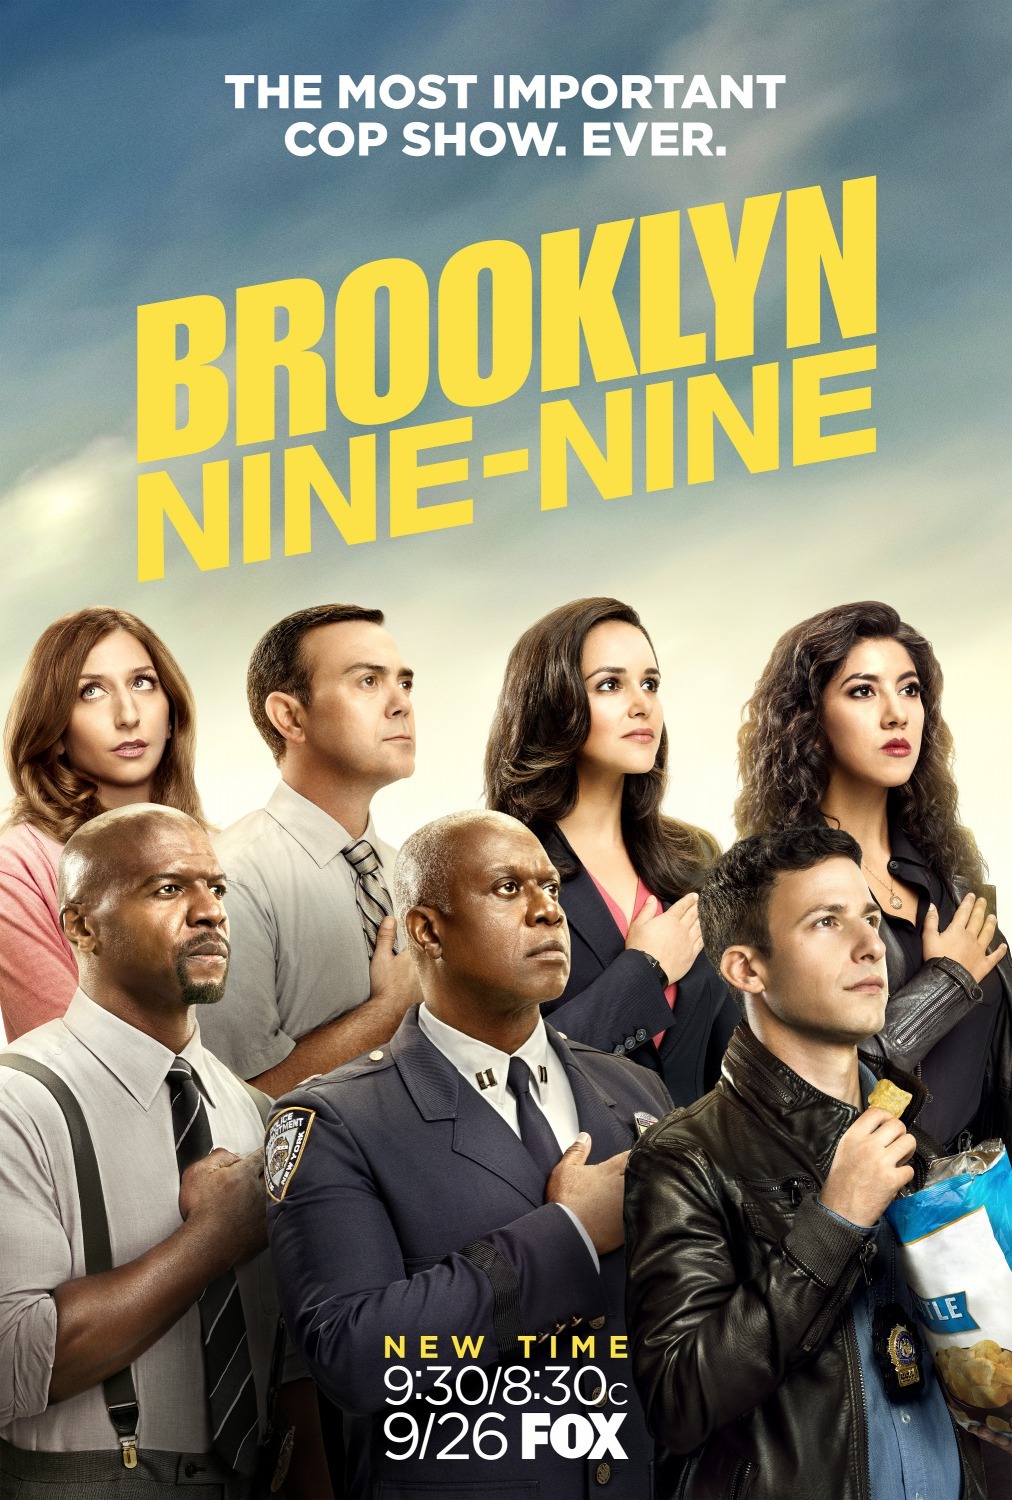 ดูหนังออนไลน์ฟรี Brooklyn Nine-Nine Season 4 EP.14 บรู๊คลินเก้า ปี 4 ตอนที่ 14